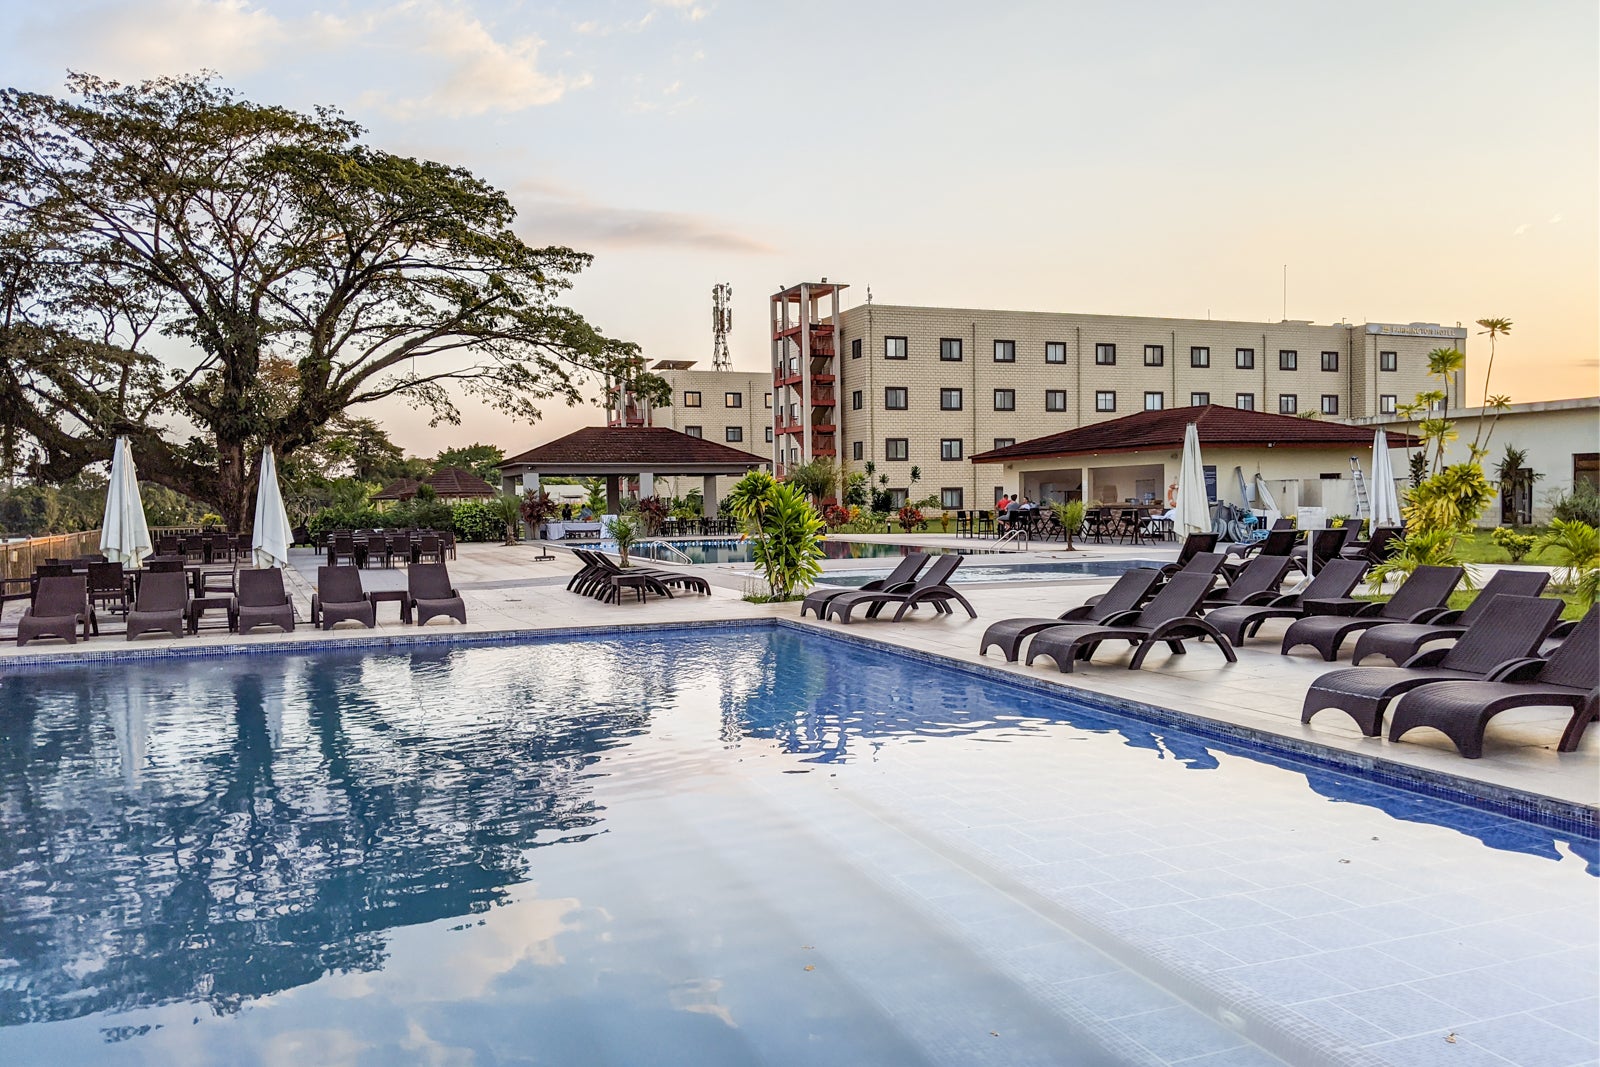 Farmington Hotel in Liberia